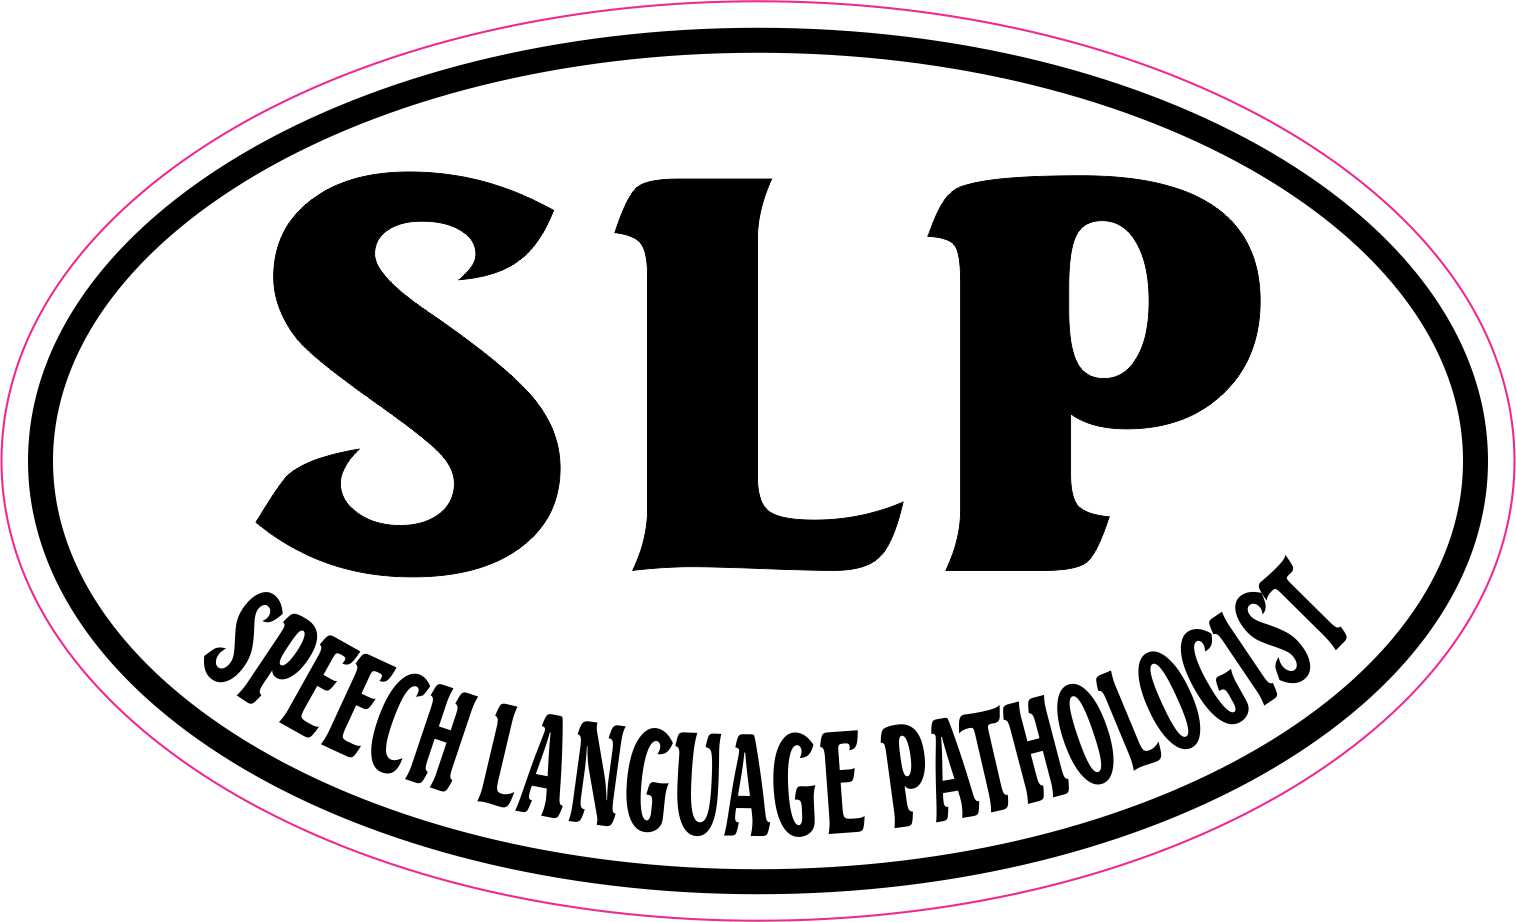 Stickertalk Oval Speech Language Pathologist Vinyl Sticker 5 Inches By 3 Inches